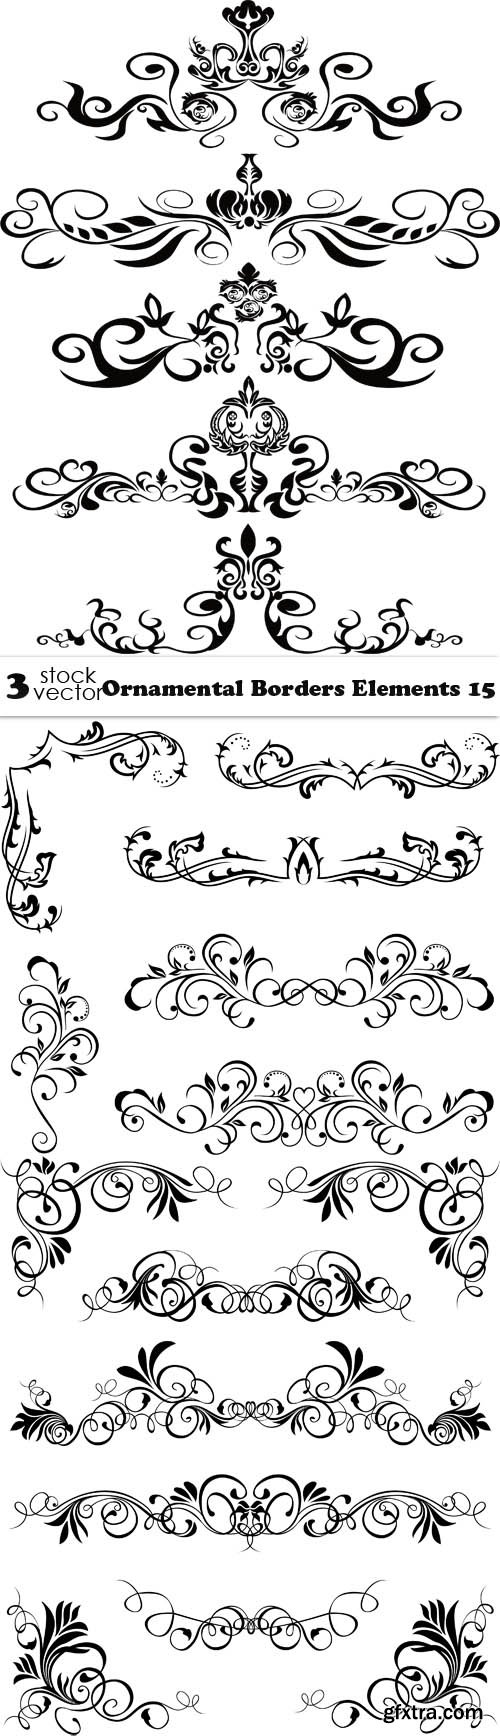 Vectors - Ornamental Borders Elements 15